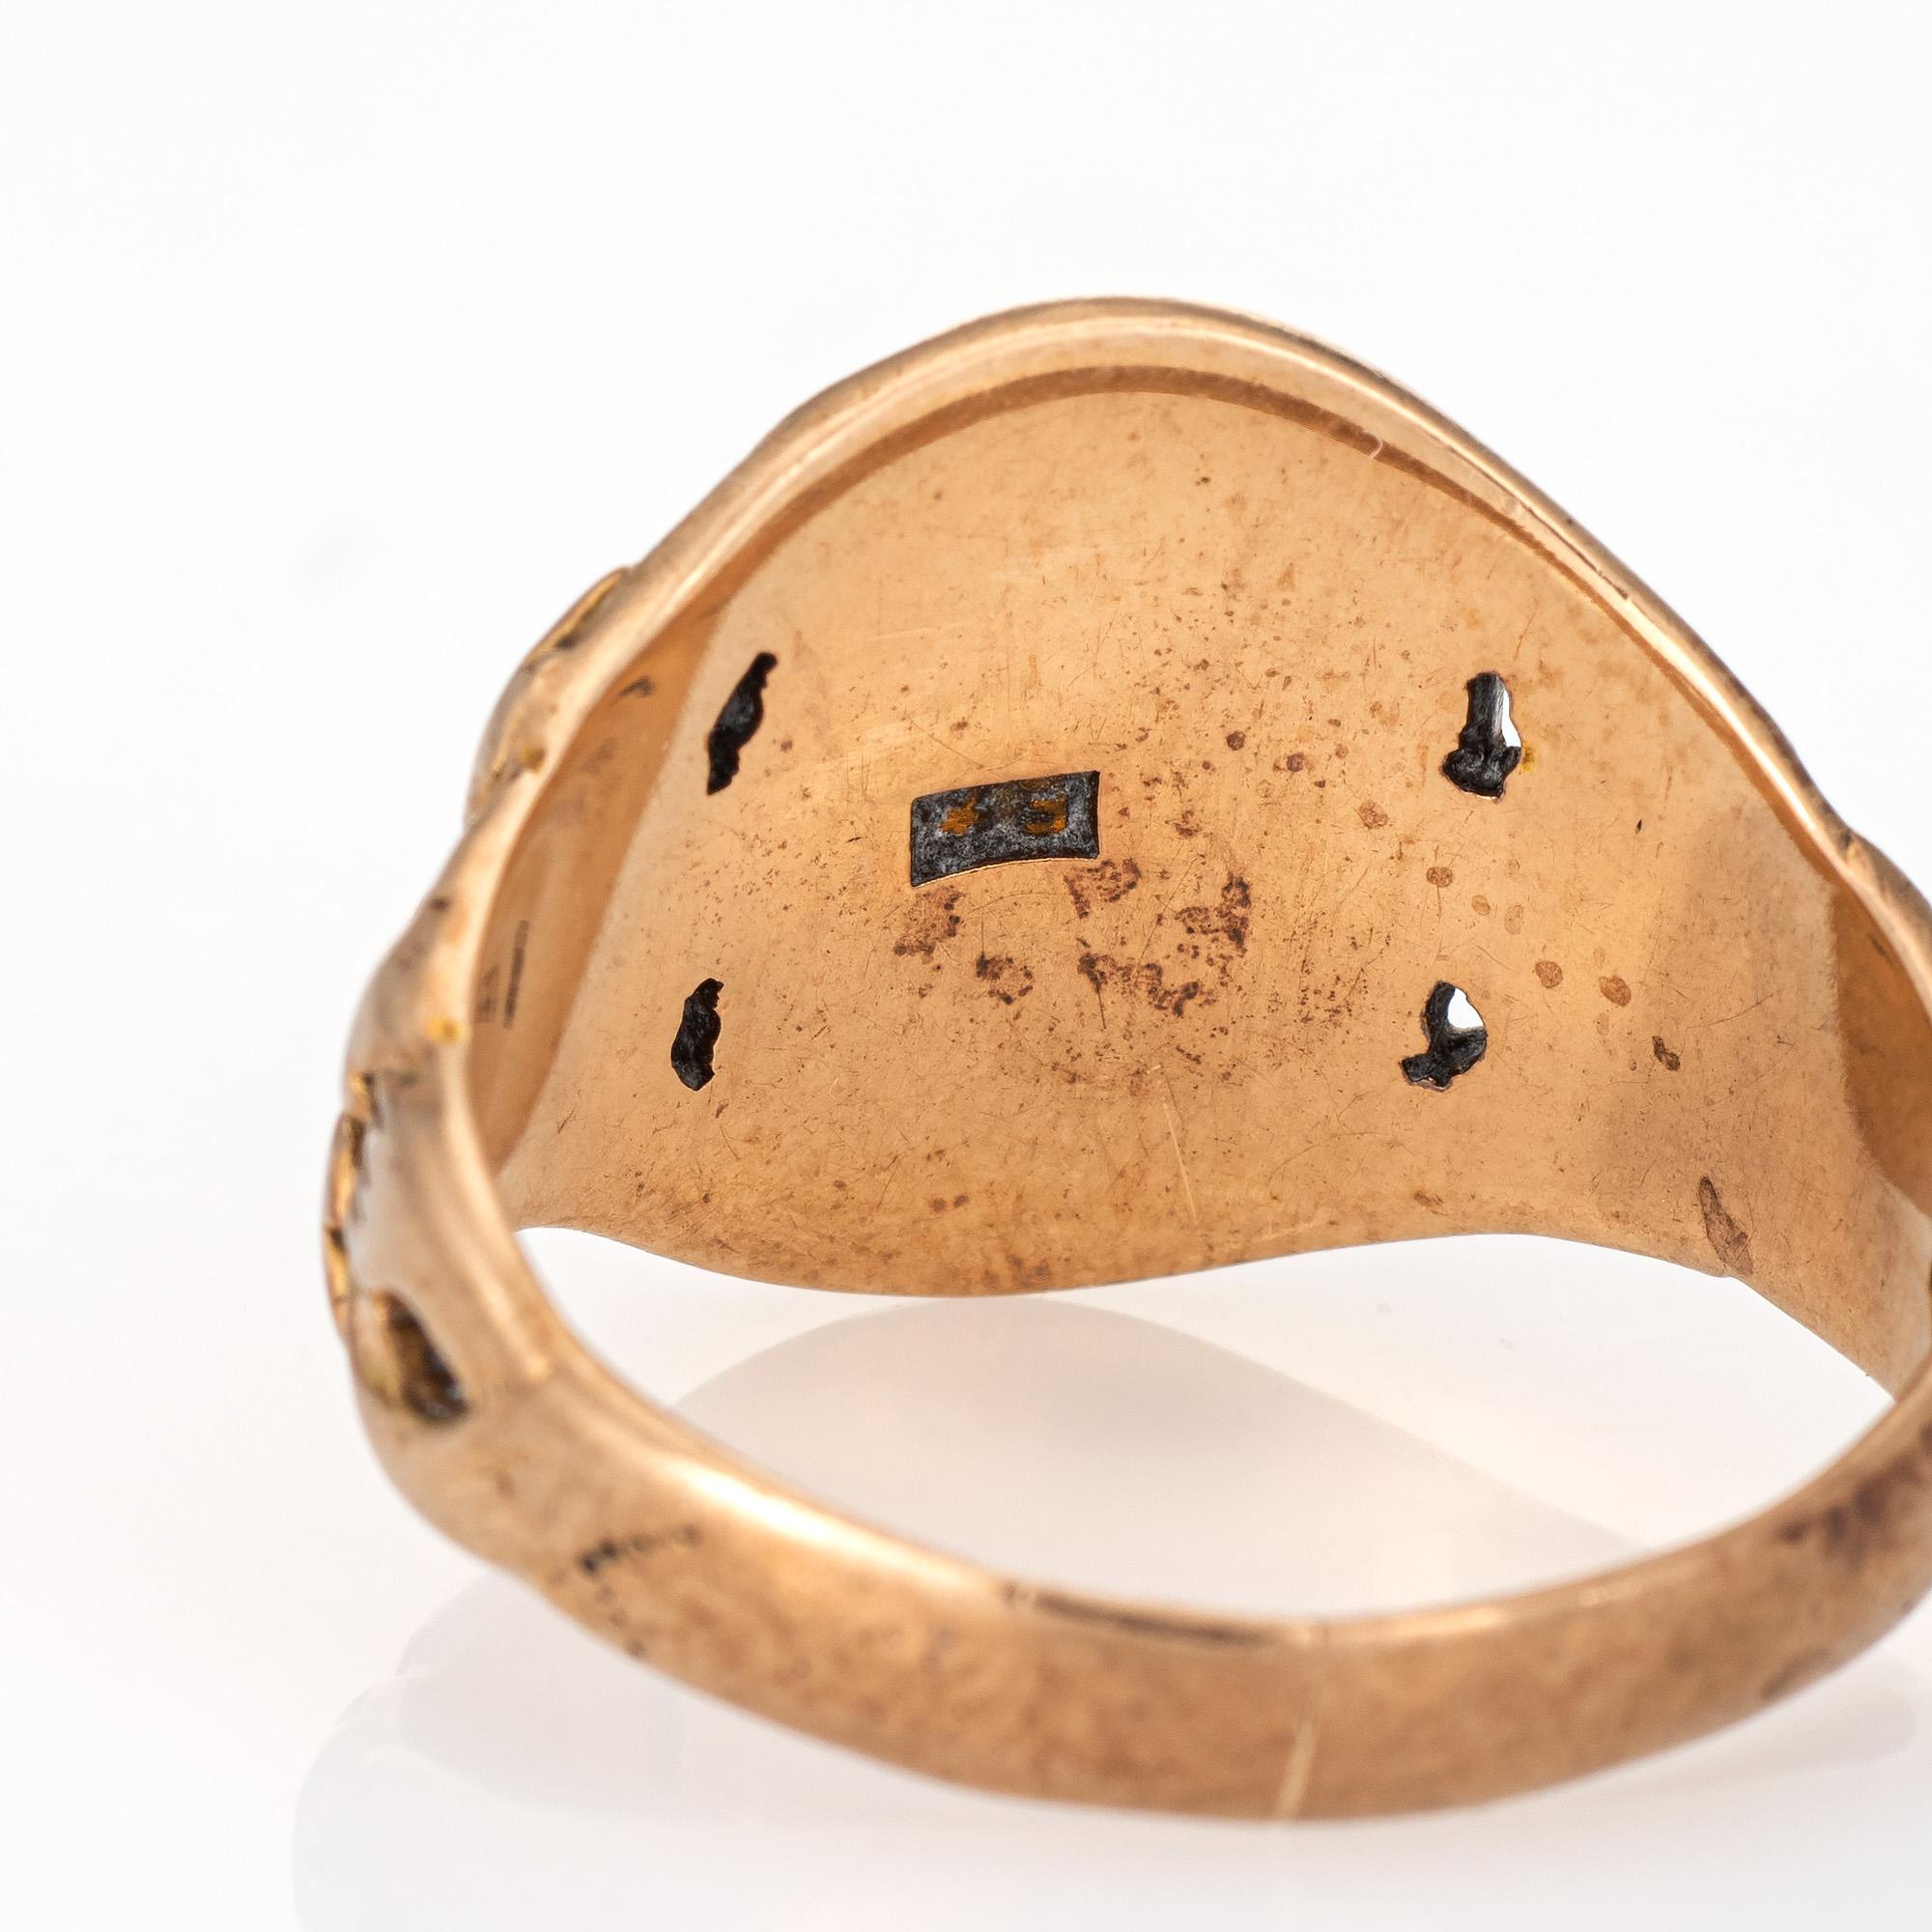 Women's or Men's Antique Victorian Men’s Signet Ring Vintage 10 Karat Rose Gold Oval Chased Mount